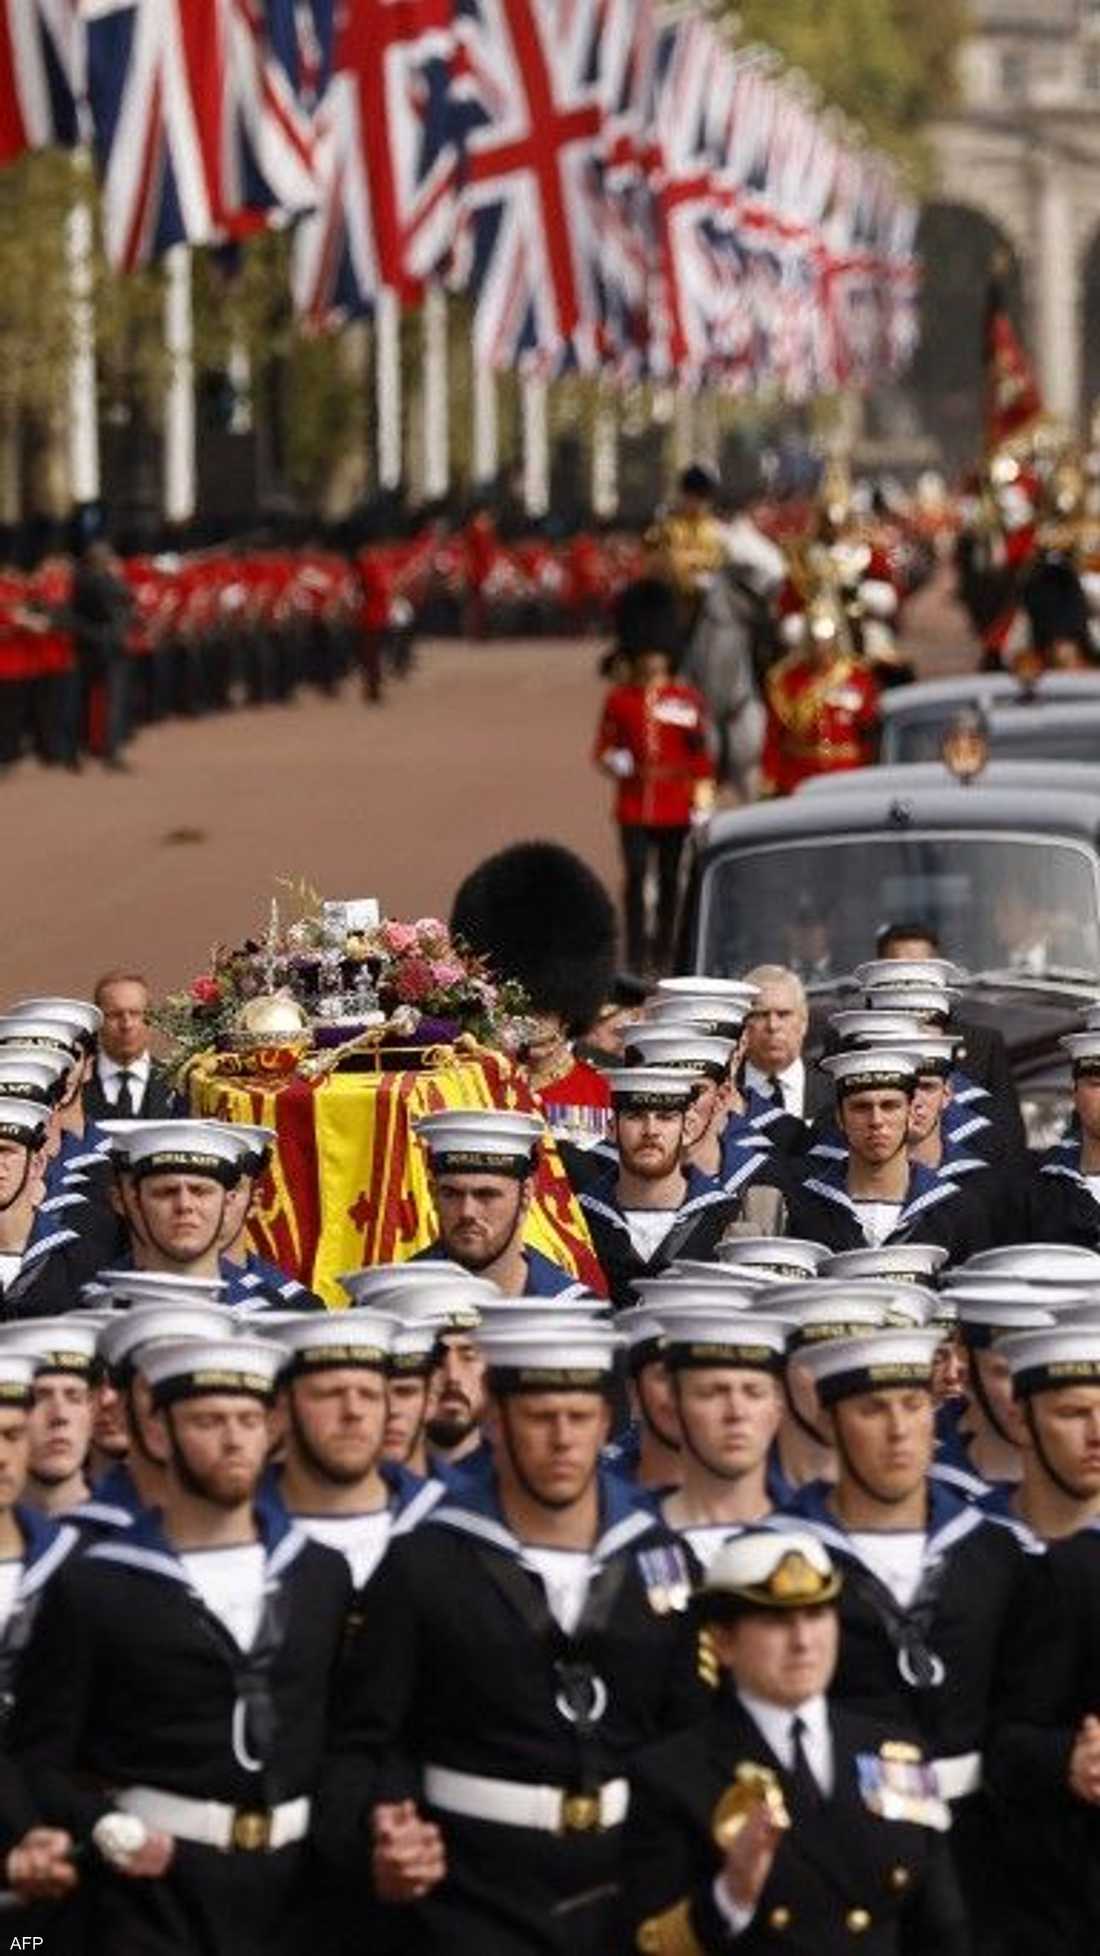 ودعت بريطانيا، الاثنين، الملكة الراحلة إليزابيث الثانية في جنازة رسمية، شهدها رؤساء وملوك وأمراء ووزراء، بالإضافة لقرابة مليون شخص اصطفوا في شوارع لندن.